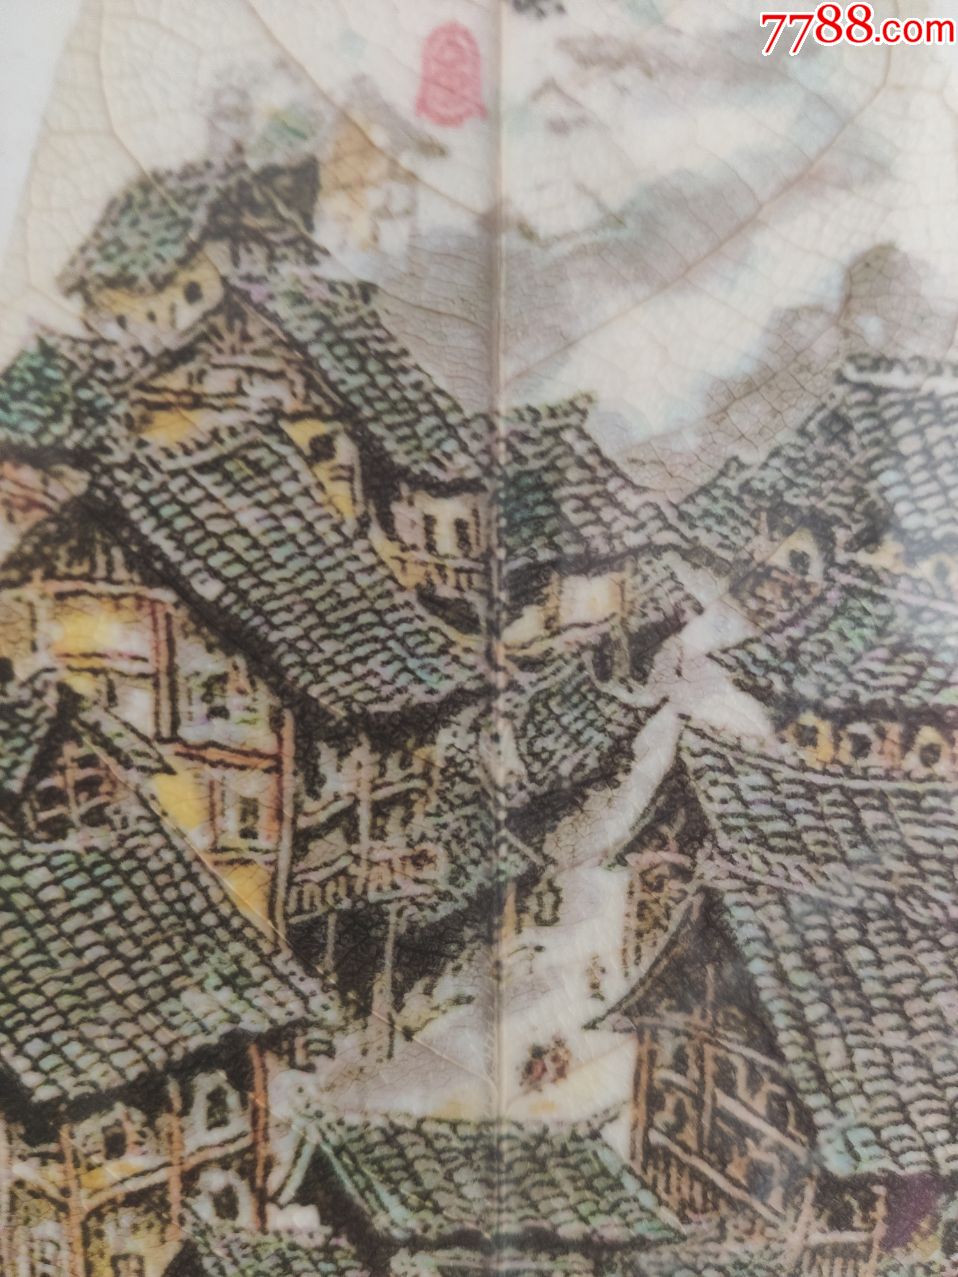 已经绝版重庆山城吊脚楼叶脉画,2010上海世博会选定贵宾礼品长25宽11.